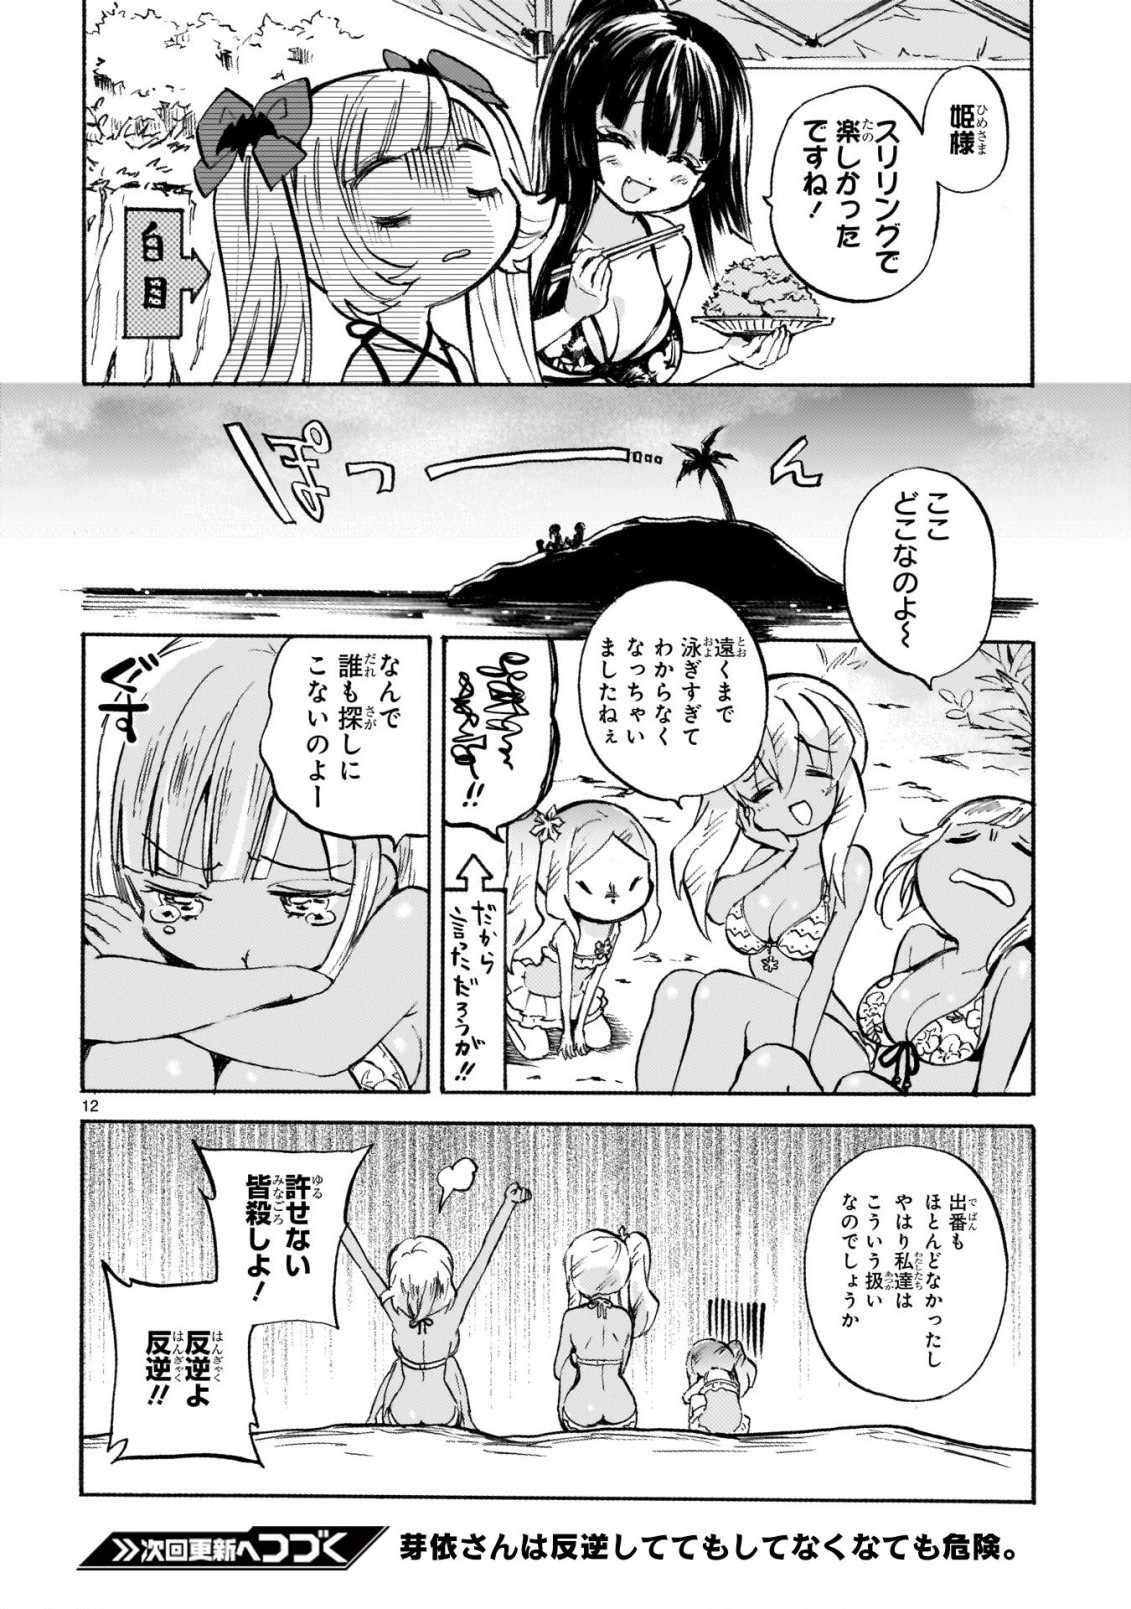 Jashin-chan Dropkick - Chapter 239-2 - Page 12